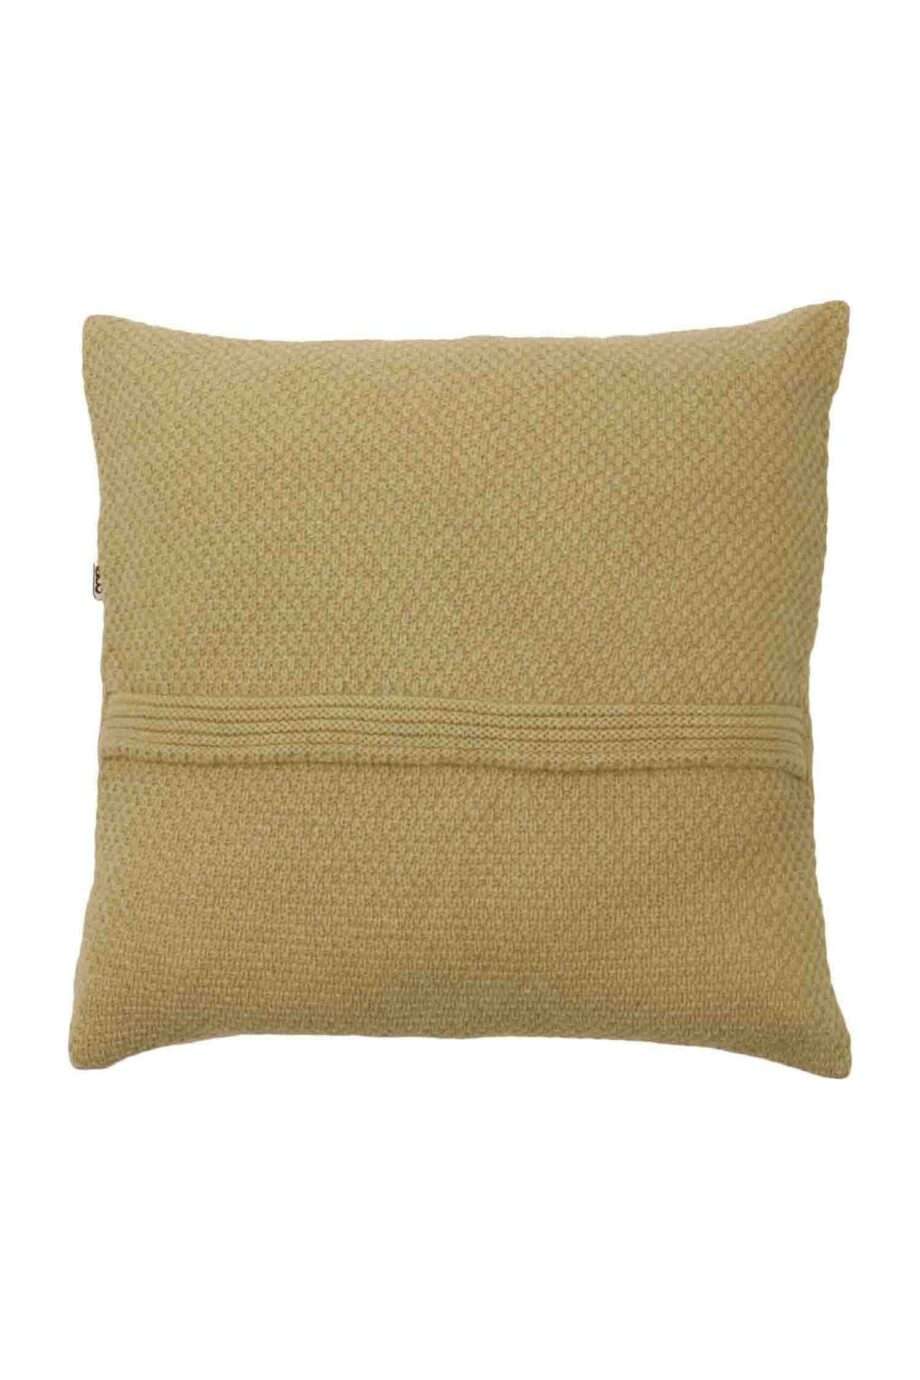 rice ochre knitted woolen pillowcase xsmall